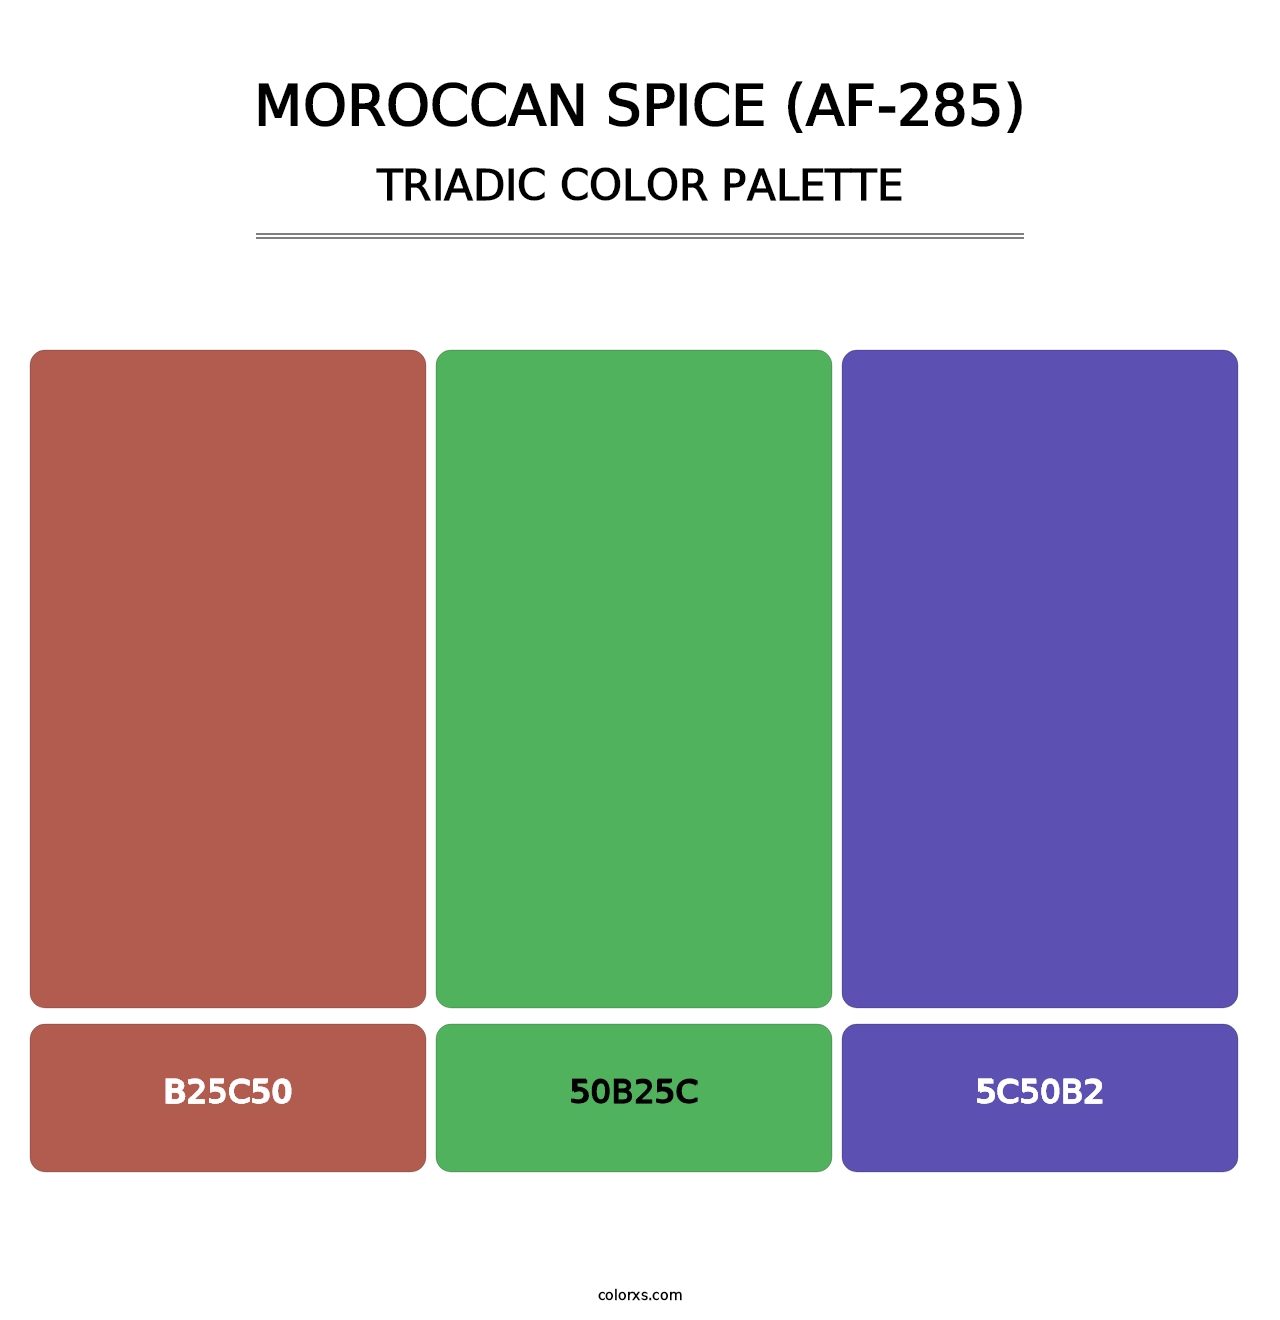 Moroccan Spice (AF-285) - Triadic Color Palette